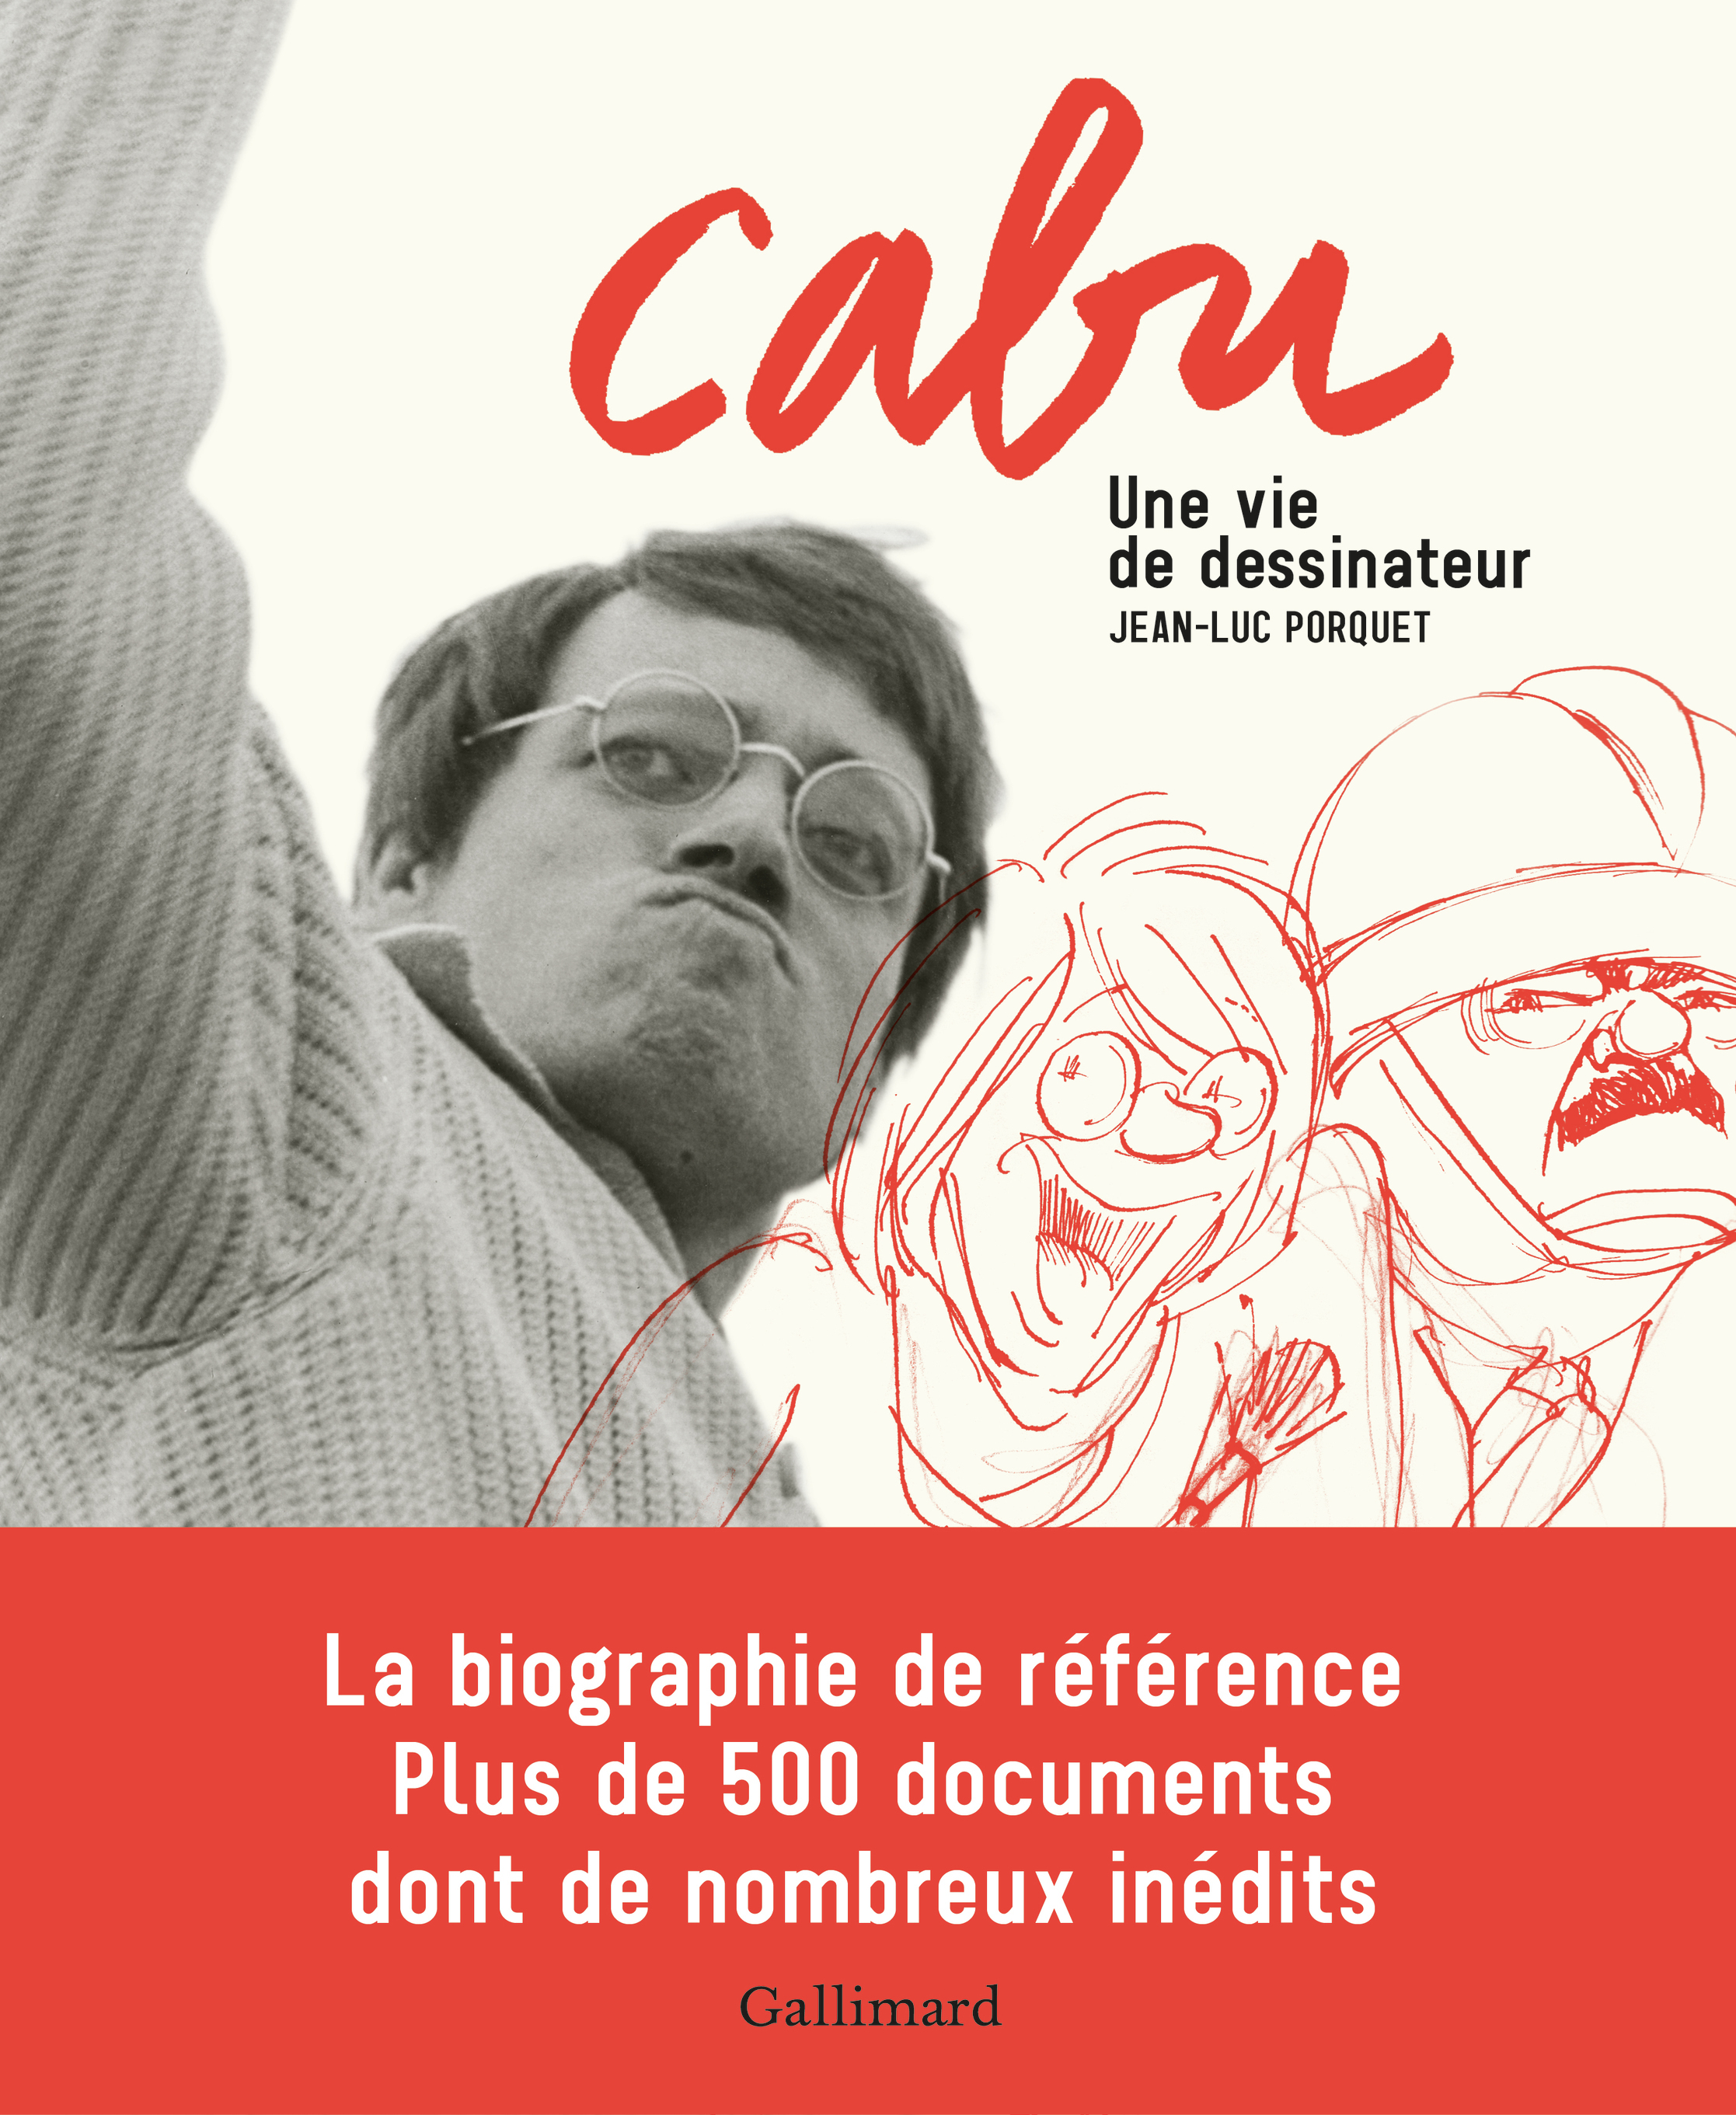 Cabu, Une vie de dessinateur (9782072729195-front-cover)